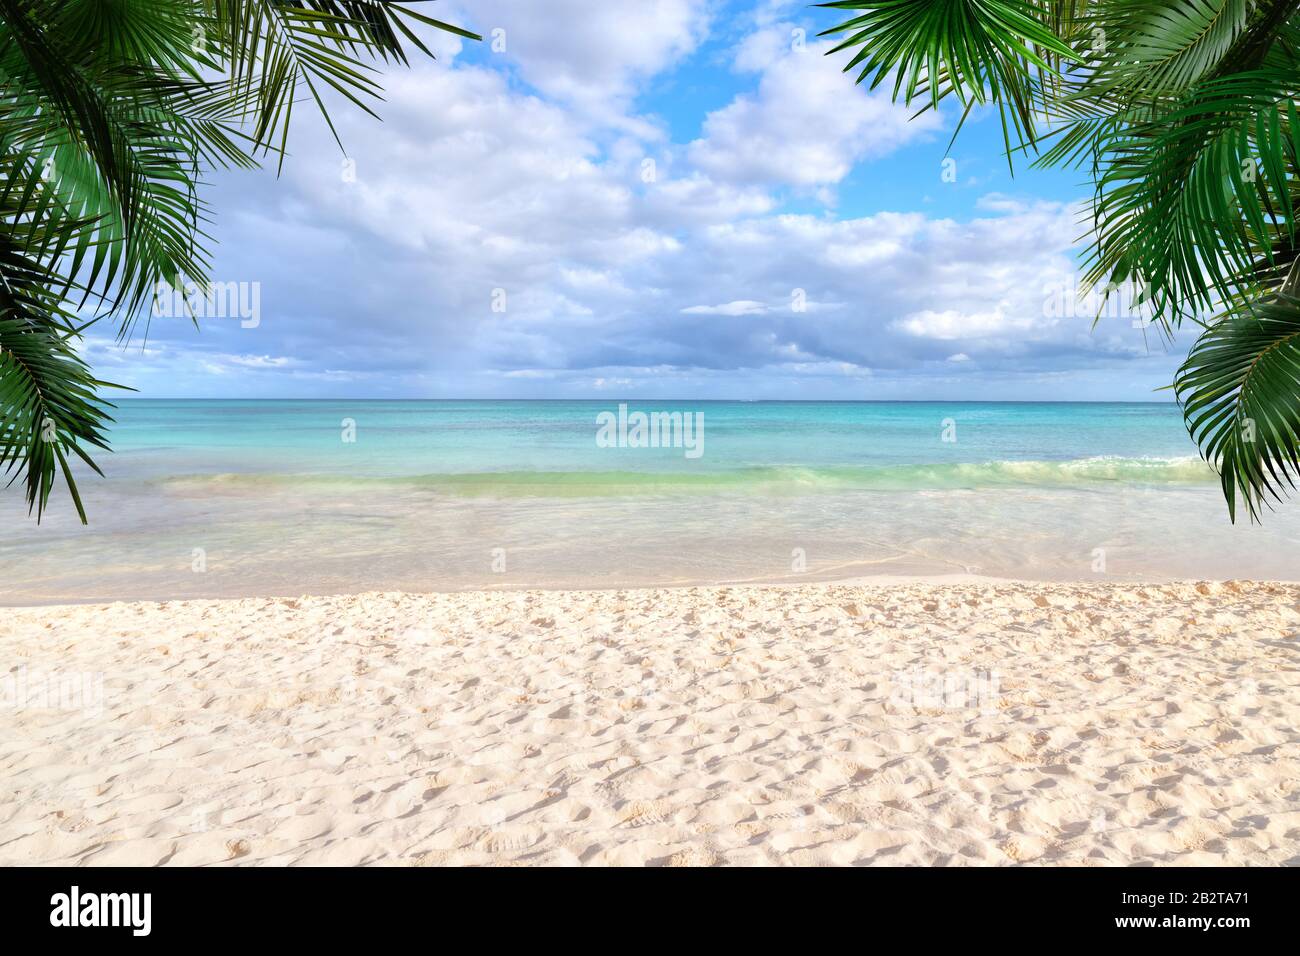 Soleado fondo de playa tropical con playa de arena, aguas cristalinas y palmeras con espacio para copiar. Foto de stock